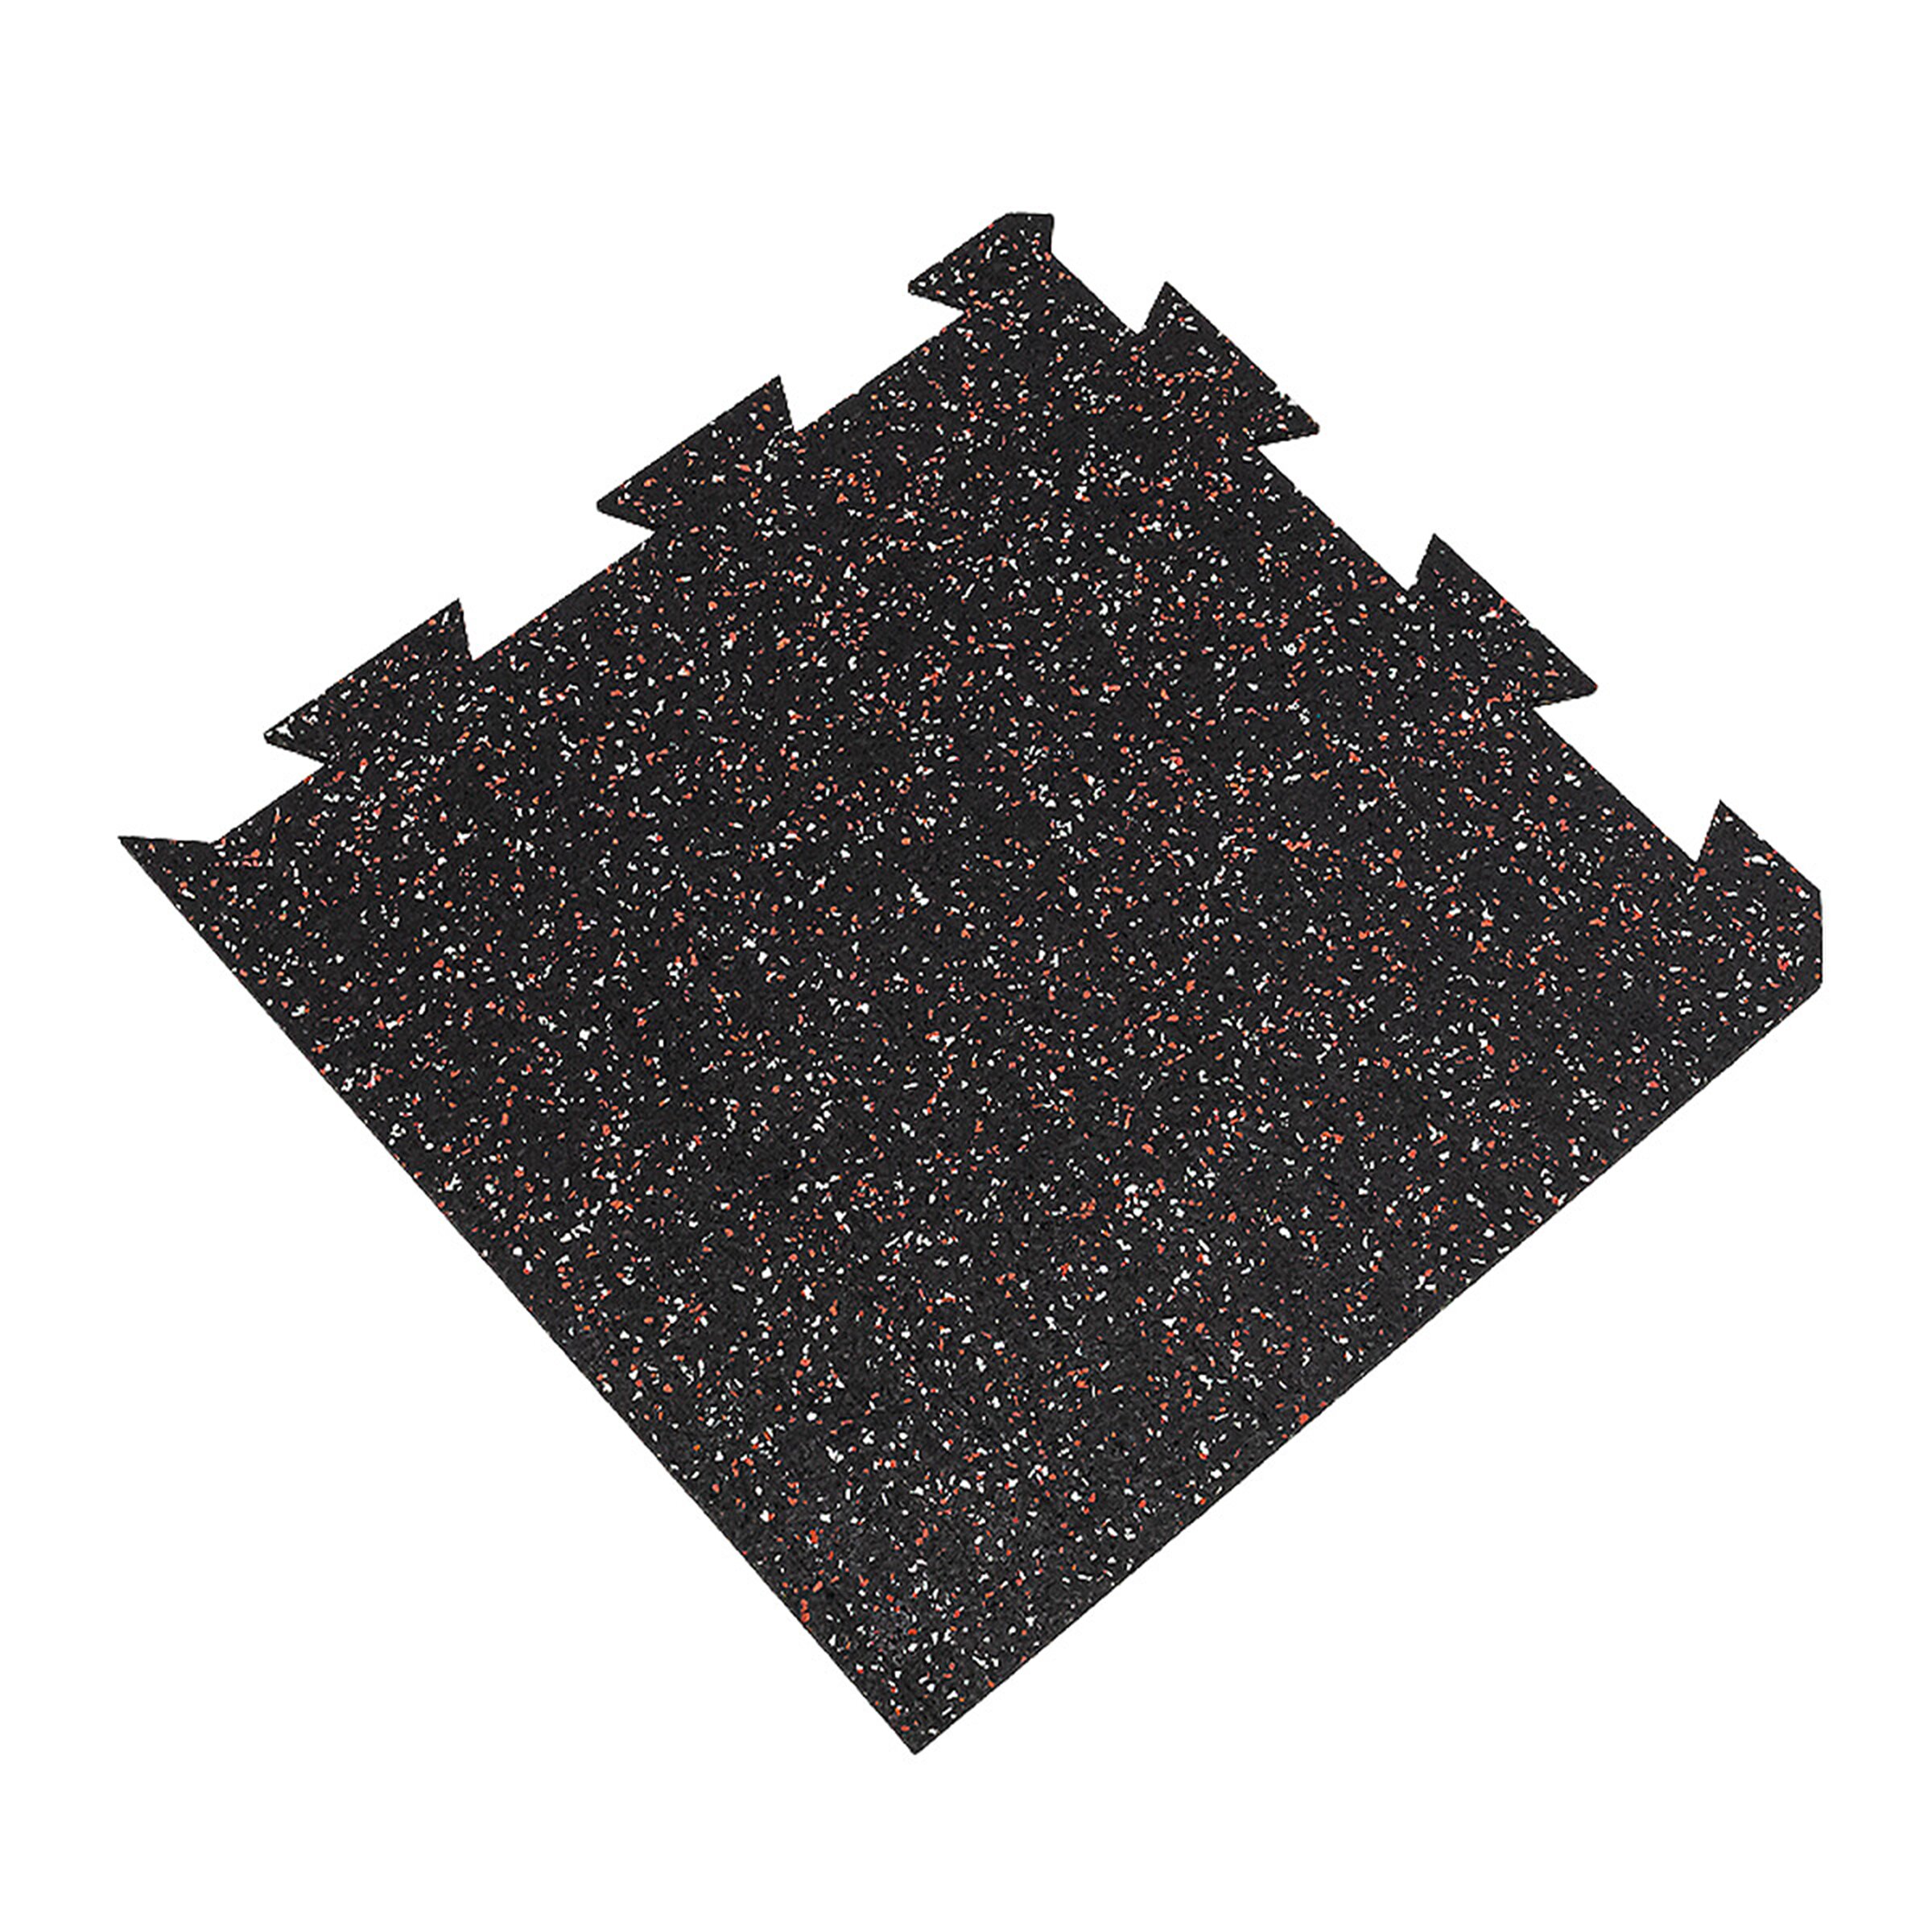 Čierno-bielo-červená gumová modulová puzzle dlažba (roh) FLOMA FitFlo SF1050 - dĺžka 50 cm, šírka 50 cm, výška 1 cm